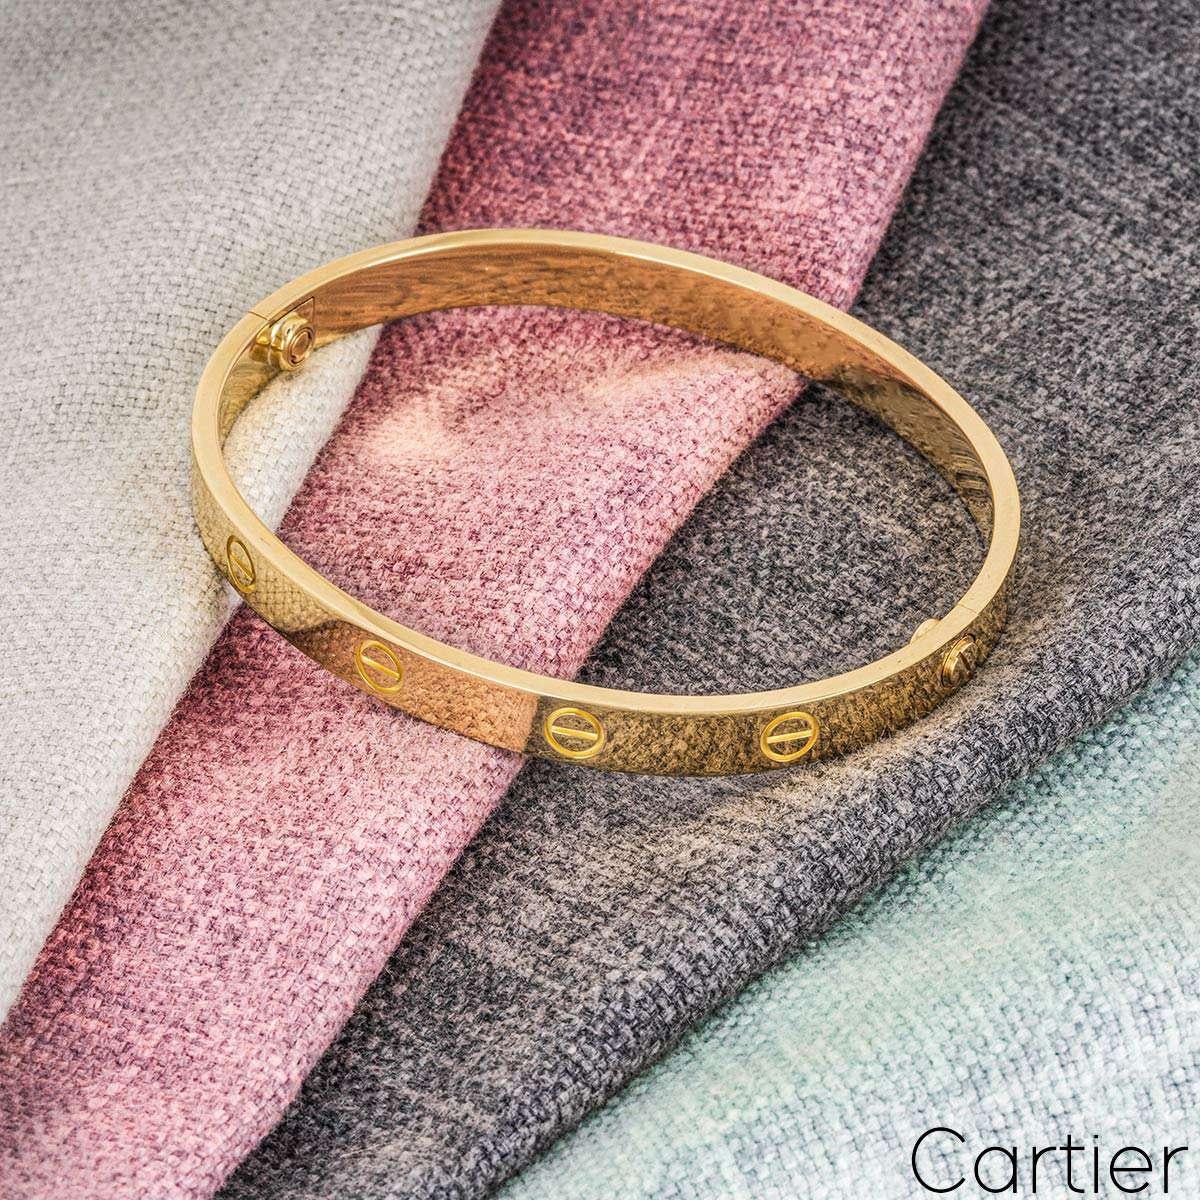 cartier bracelet sizes